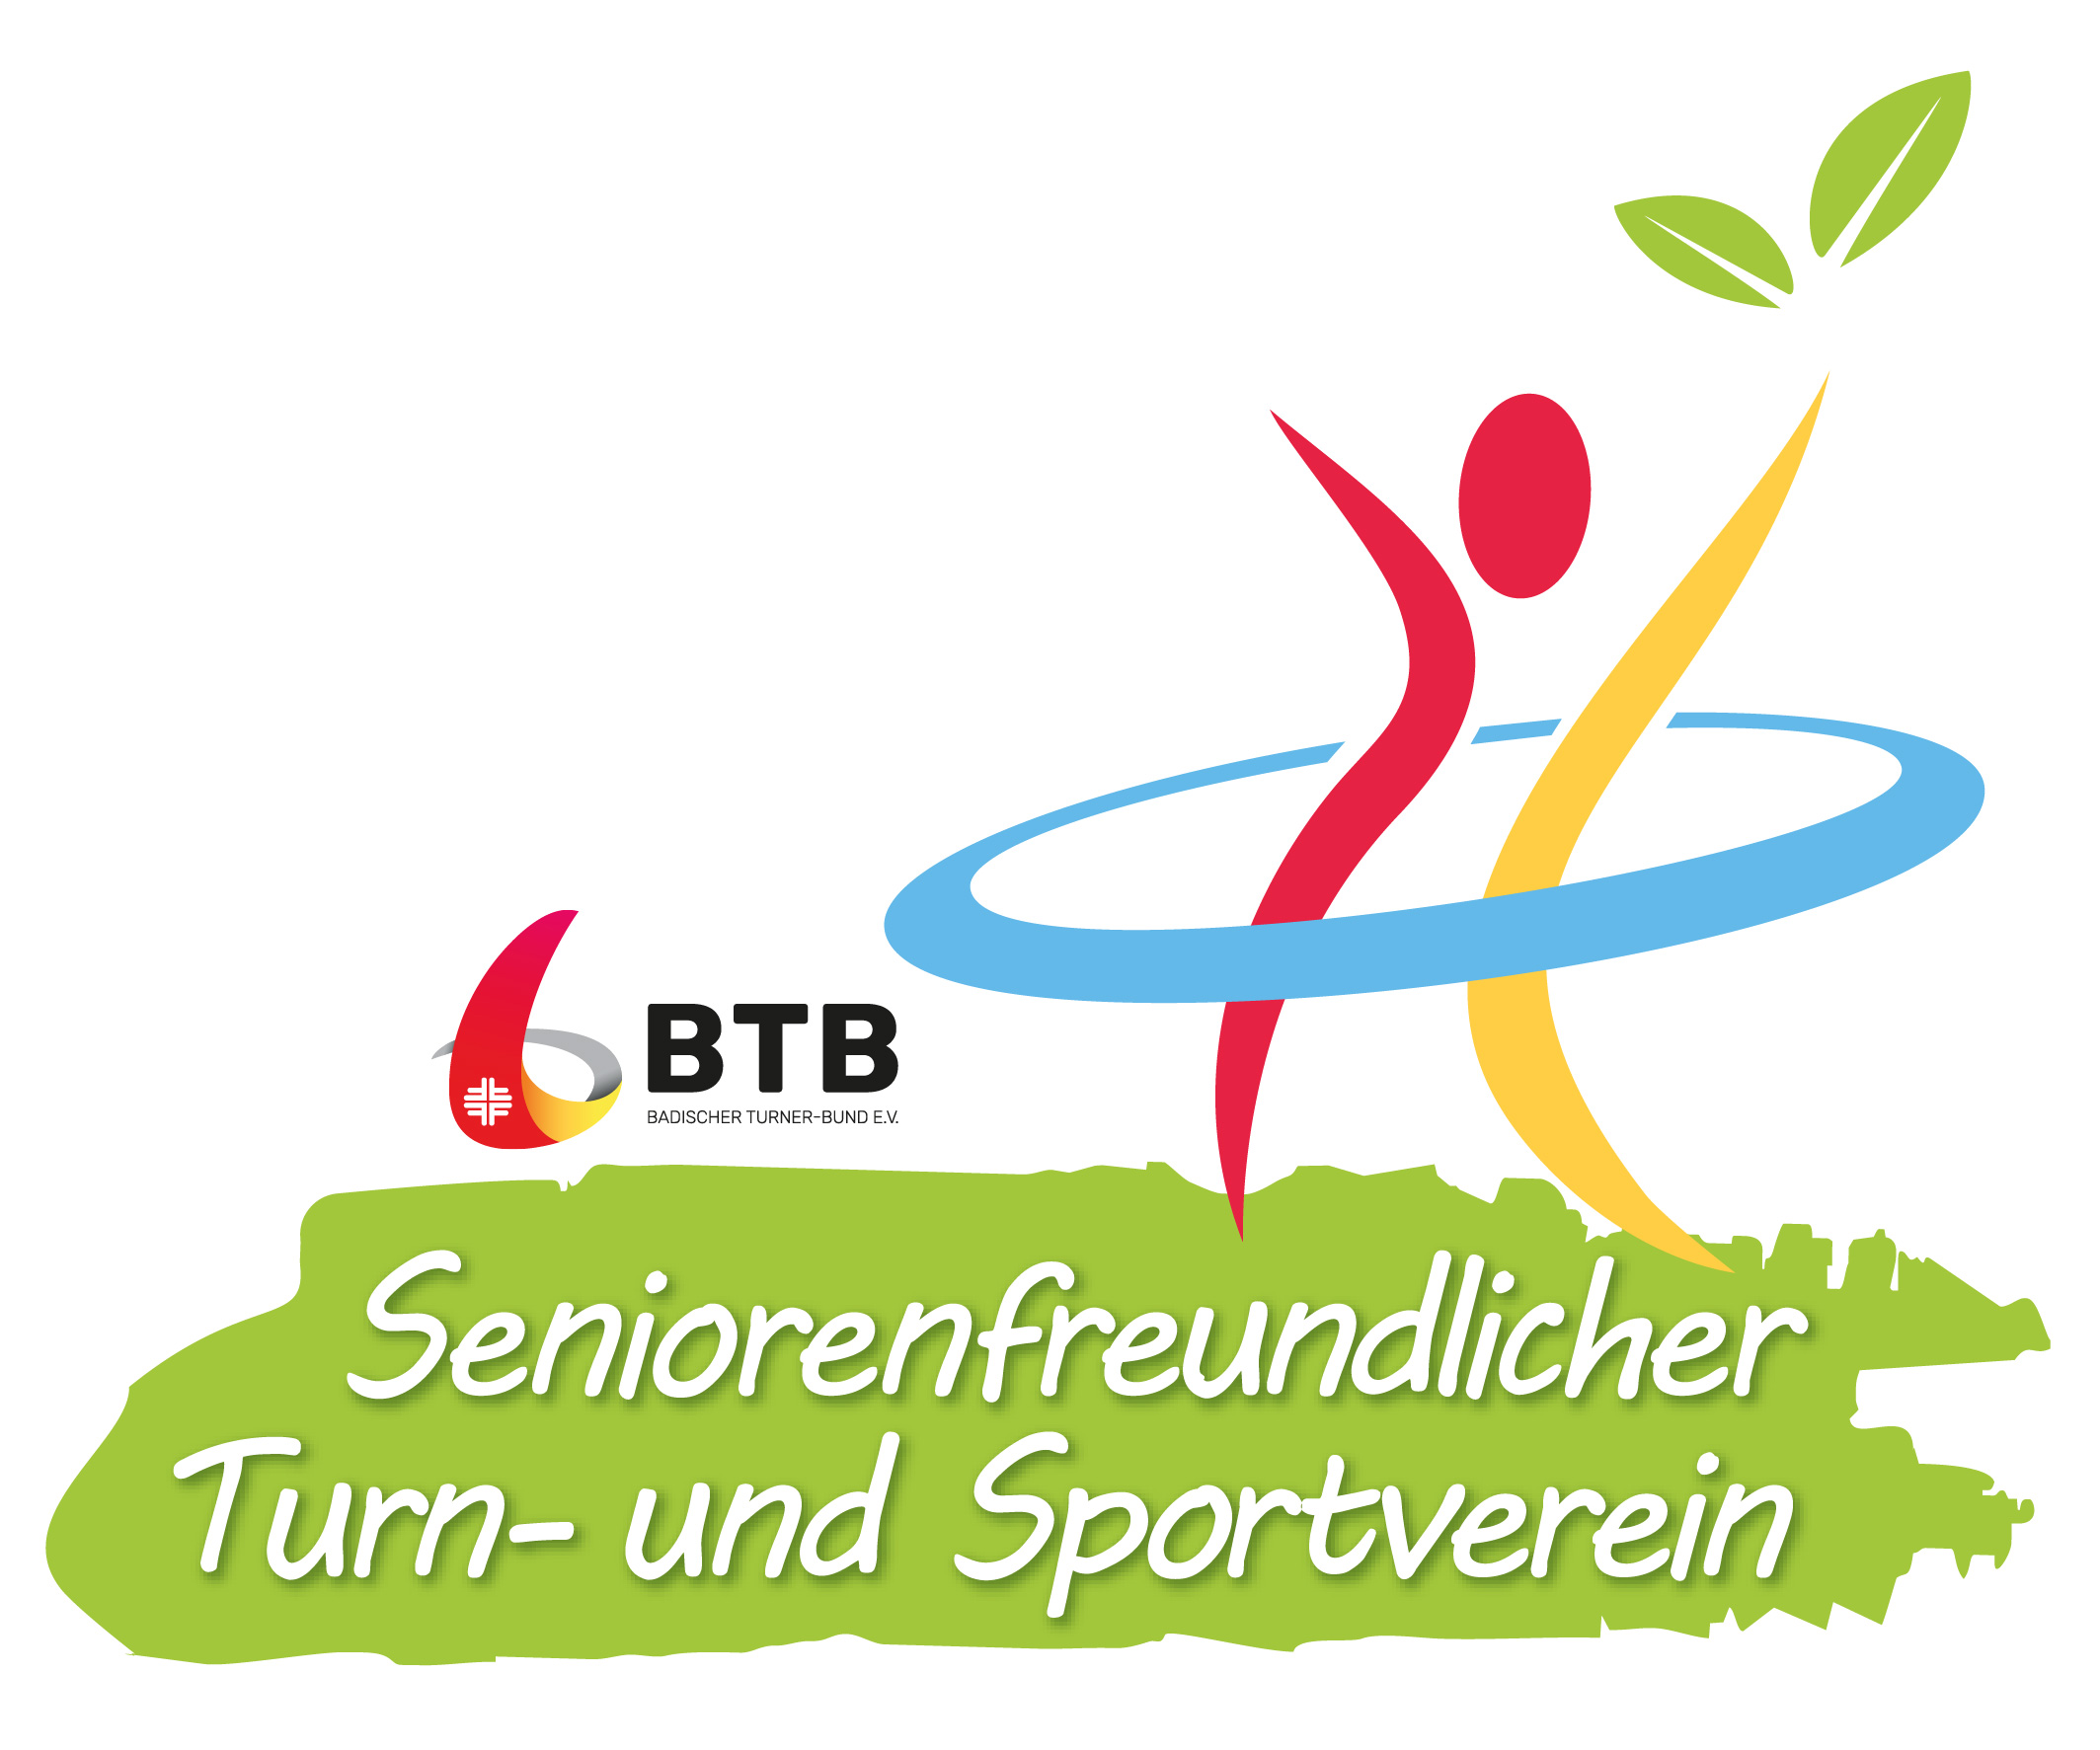 TVB erhält Auszeichnung „Seniorenfreundlicher Turn- und Sportverein“